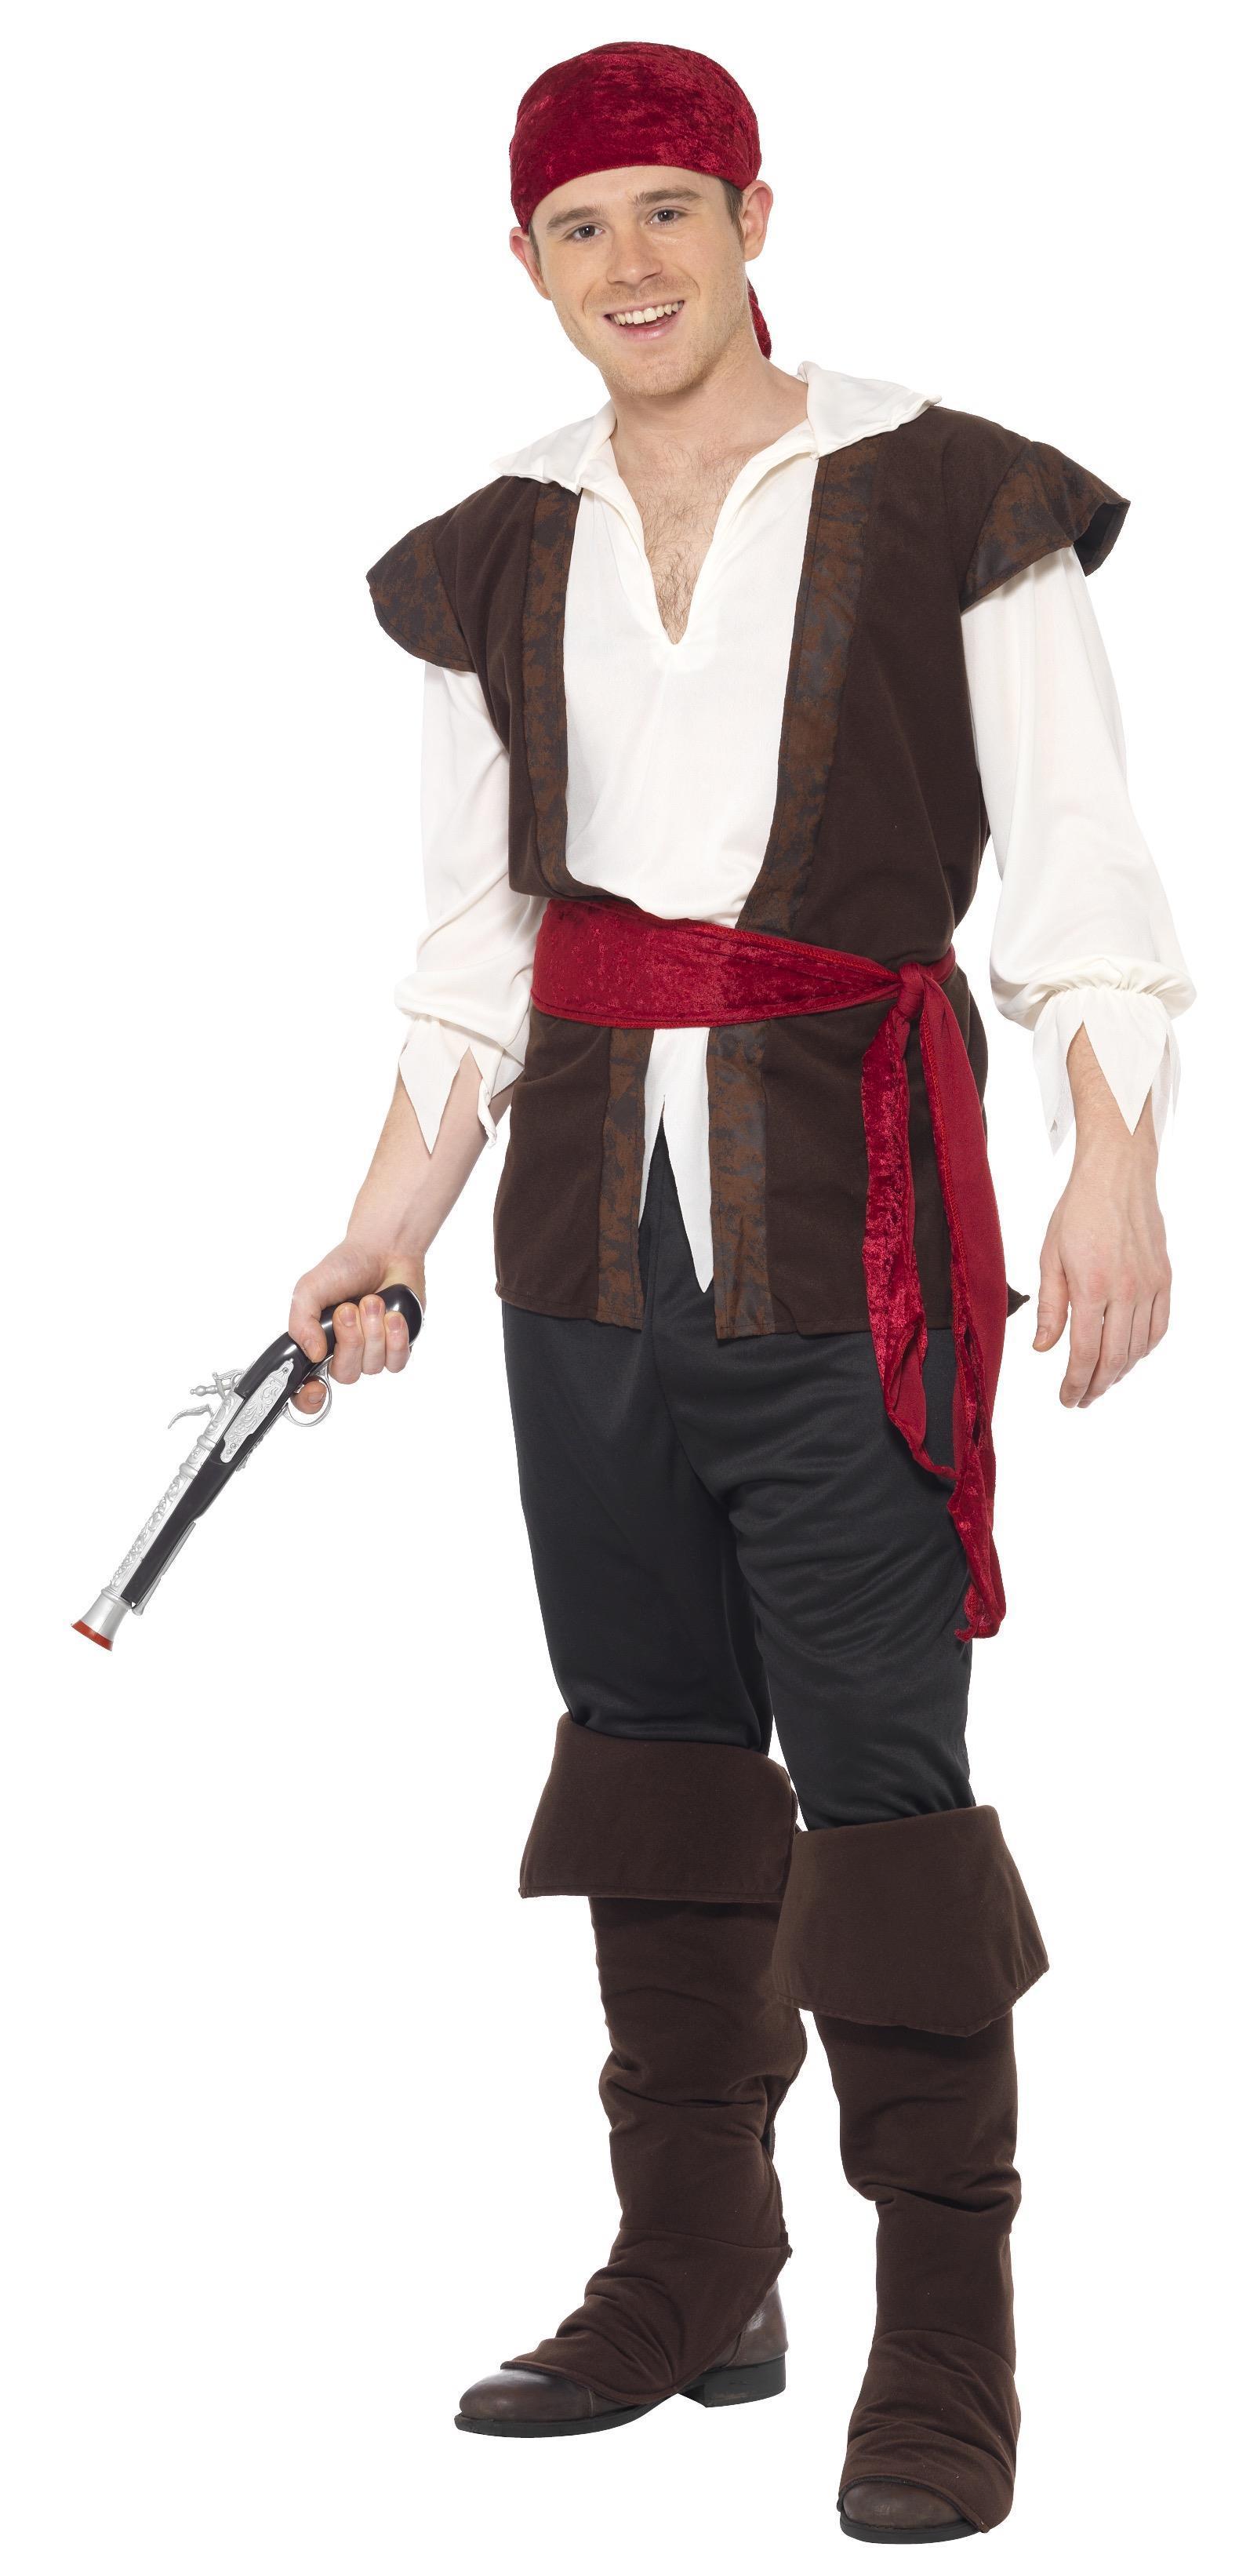 Pirate Lad Costume